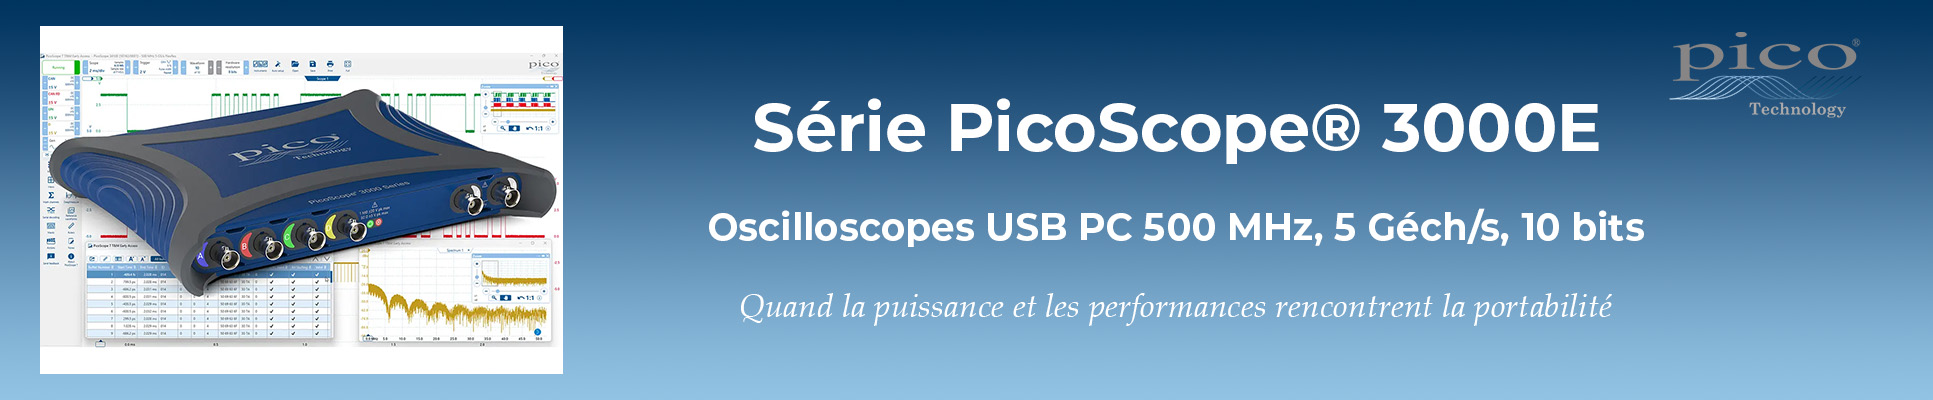 Série PicoScope 3000E